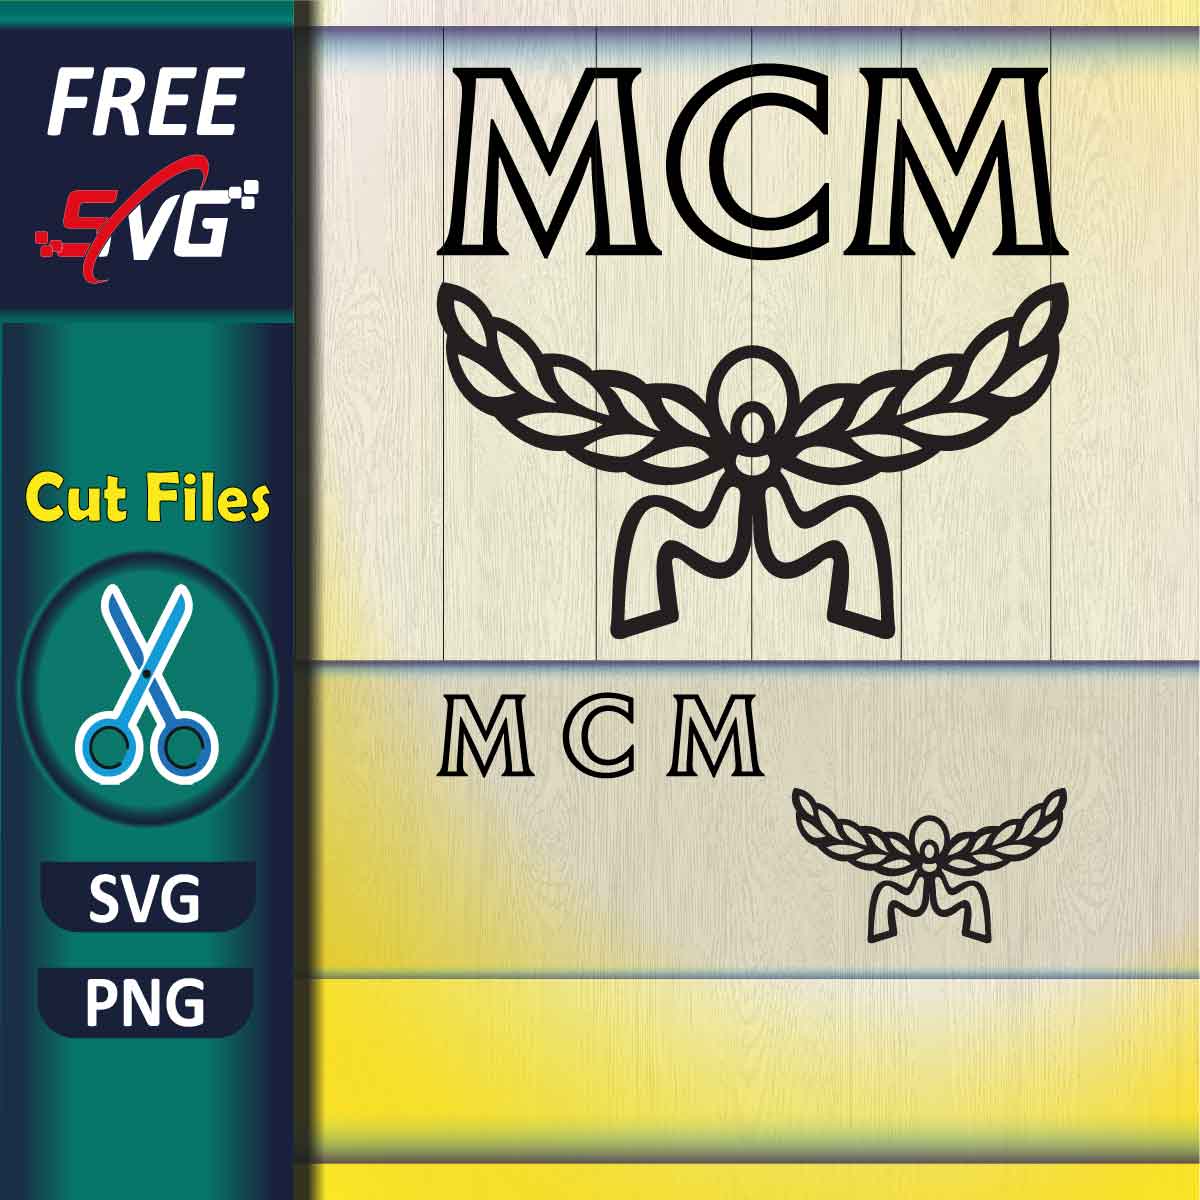 MCM Logo SVG Free - Free SVG Files